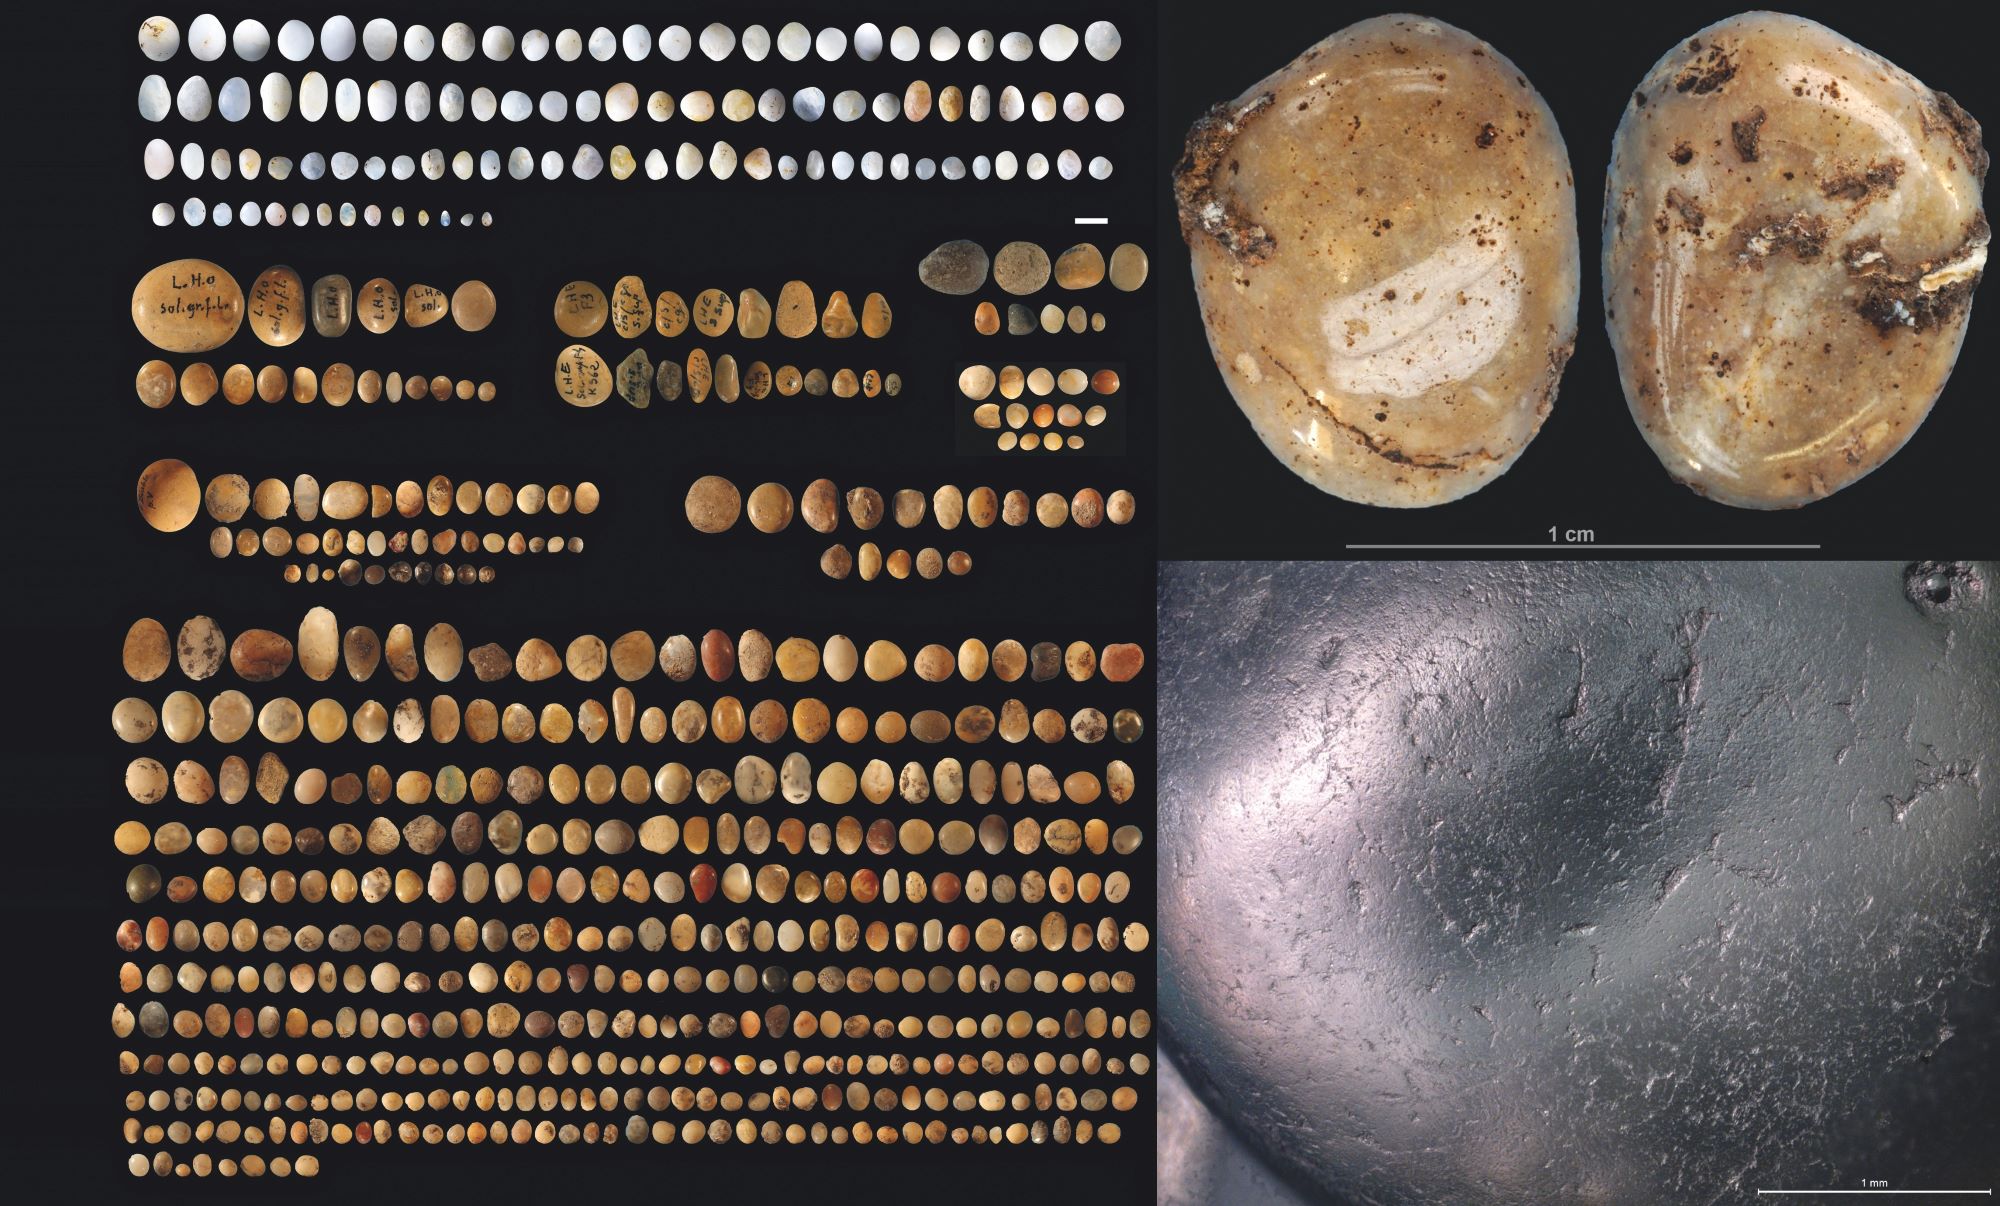 À gauche : galets polis découverts dans cinq sites paléolithiques du sud-ouest de la France, datés entre 29 000 et 20 000 avant notre ère ; en haut à droite : galet poli découvert lors des fouilles à l’abri du Fourneau du Diable, en Dordogne ; en bas à droite : photo microscopique de la surface de l’un des galets polis. © L. Geis